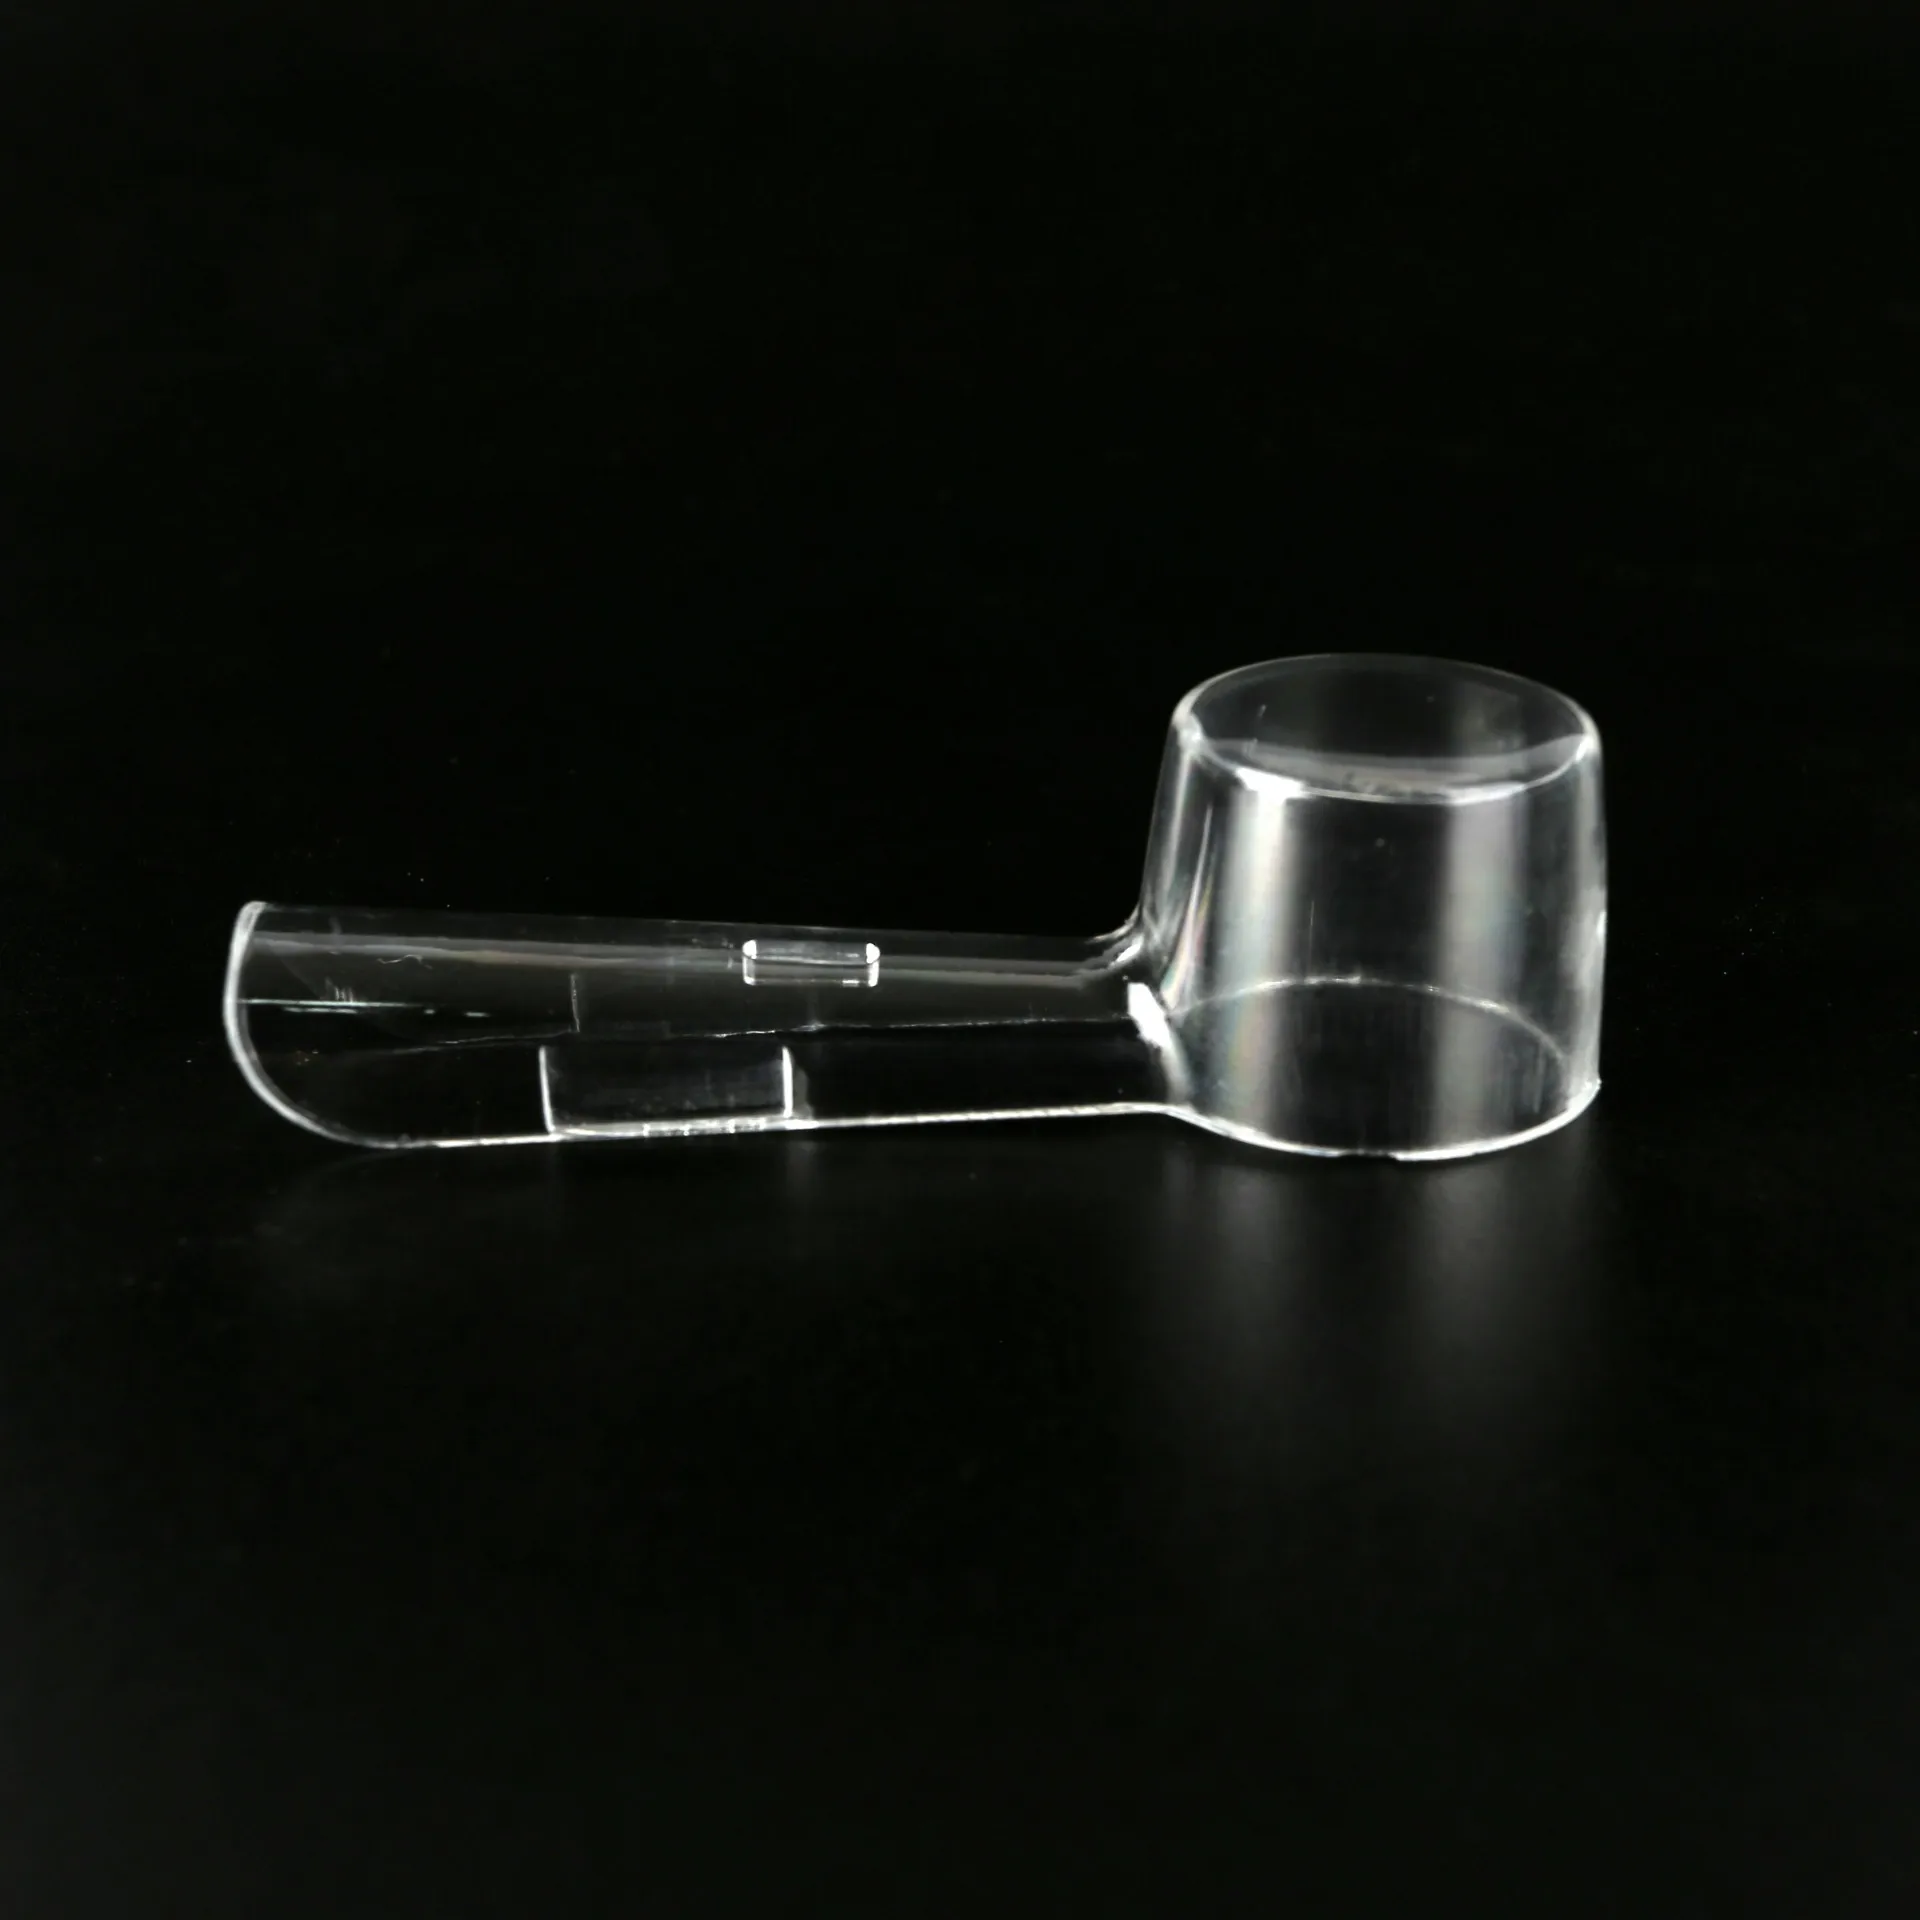 5 шт. Защитный чехол для головки зубной щетки, чехол-накладка для зубной щетки Braun Oral B, защитный колпачок для электрической зубной щетки, дорожный чехол для электрической зубной щетки Изображение 4